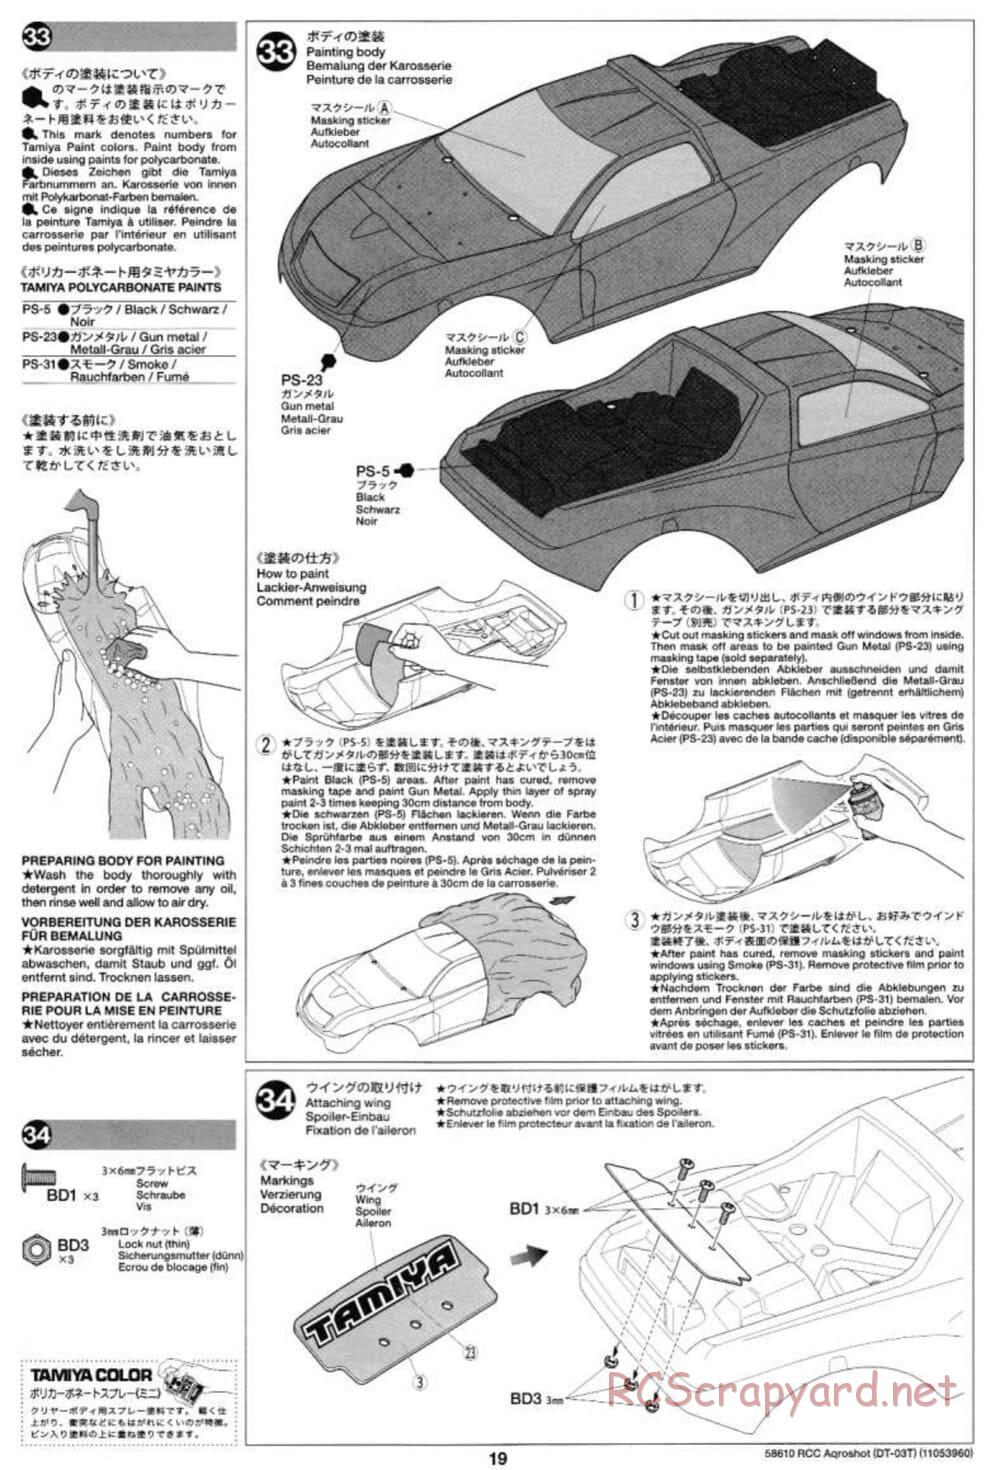 Tamiya - Aqroshot Chassis - Manual - Page 19